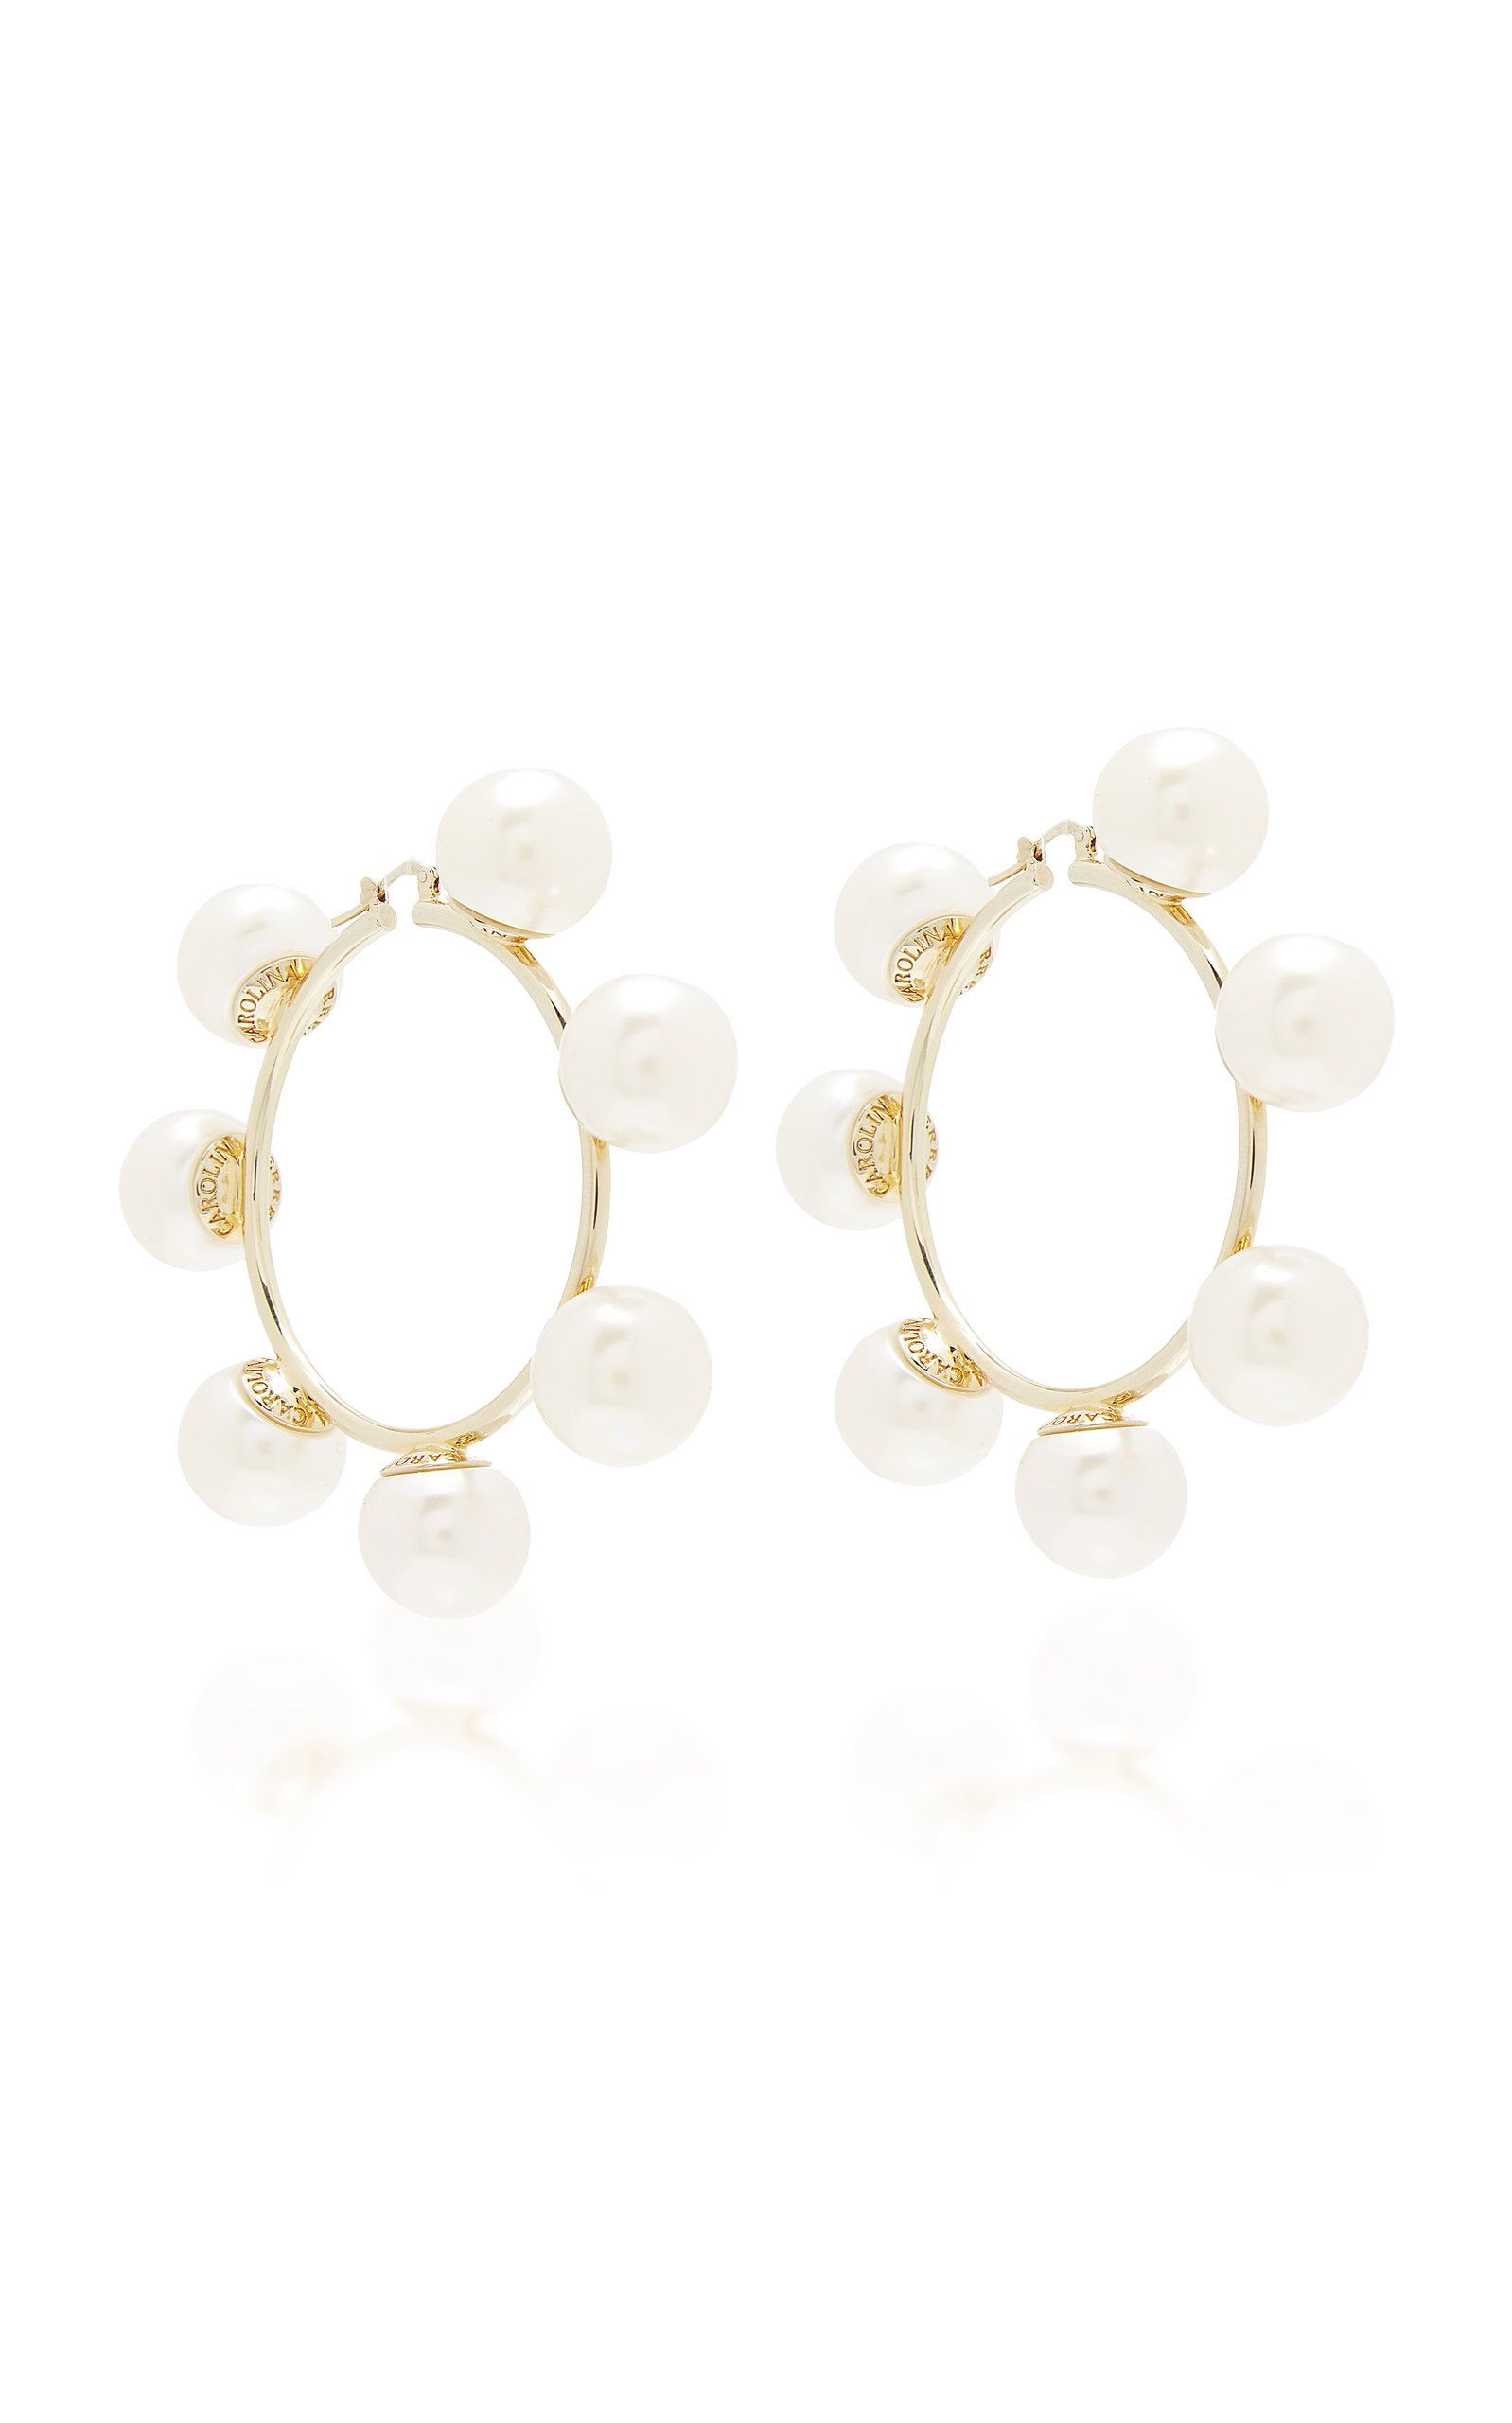 Gold-Plated And Faux Pearl Earrings | Moda Operandi Global